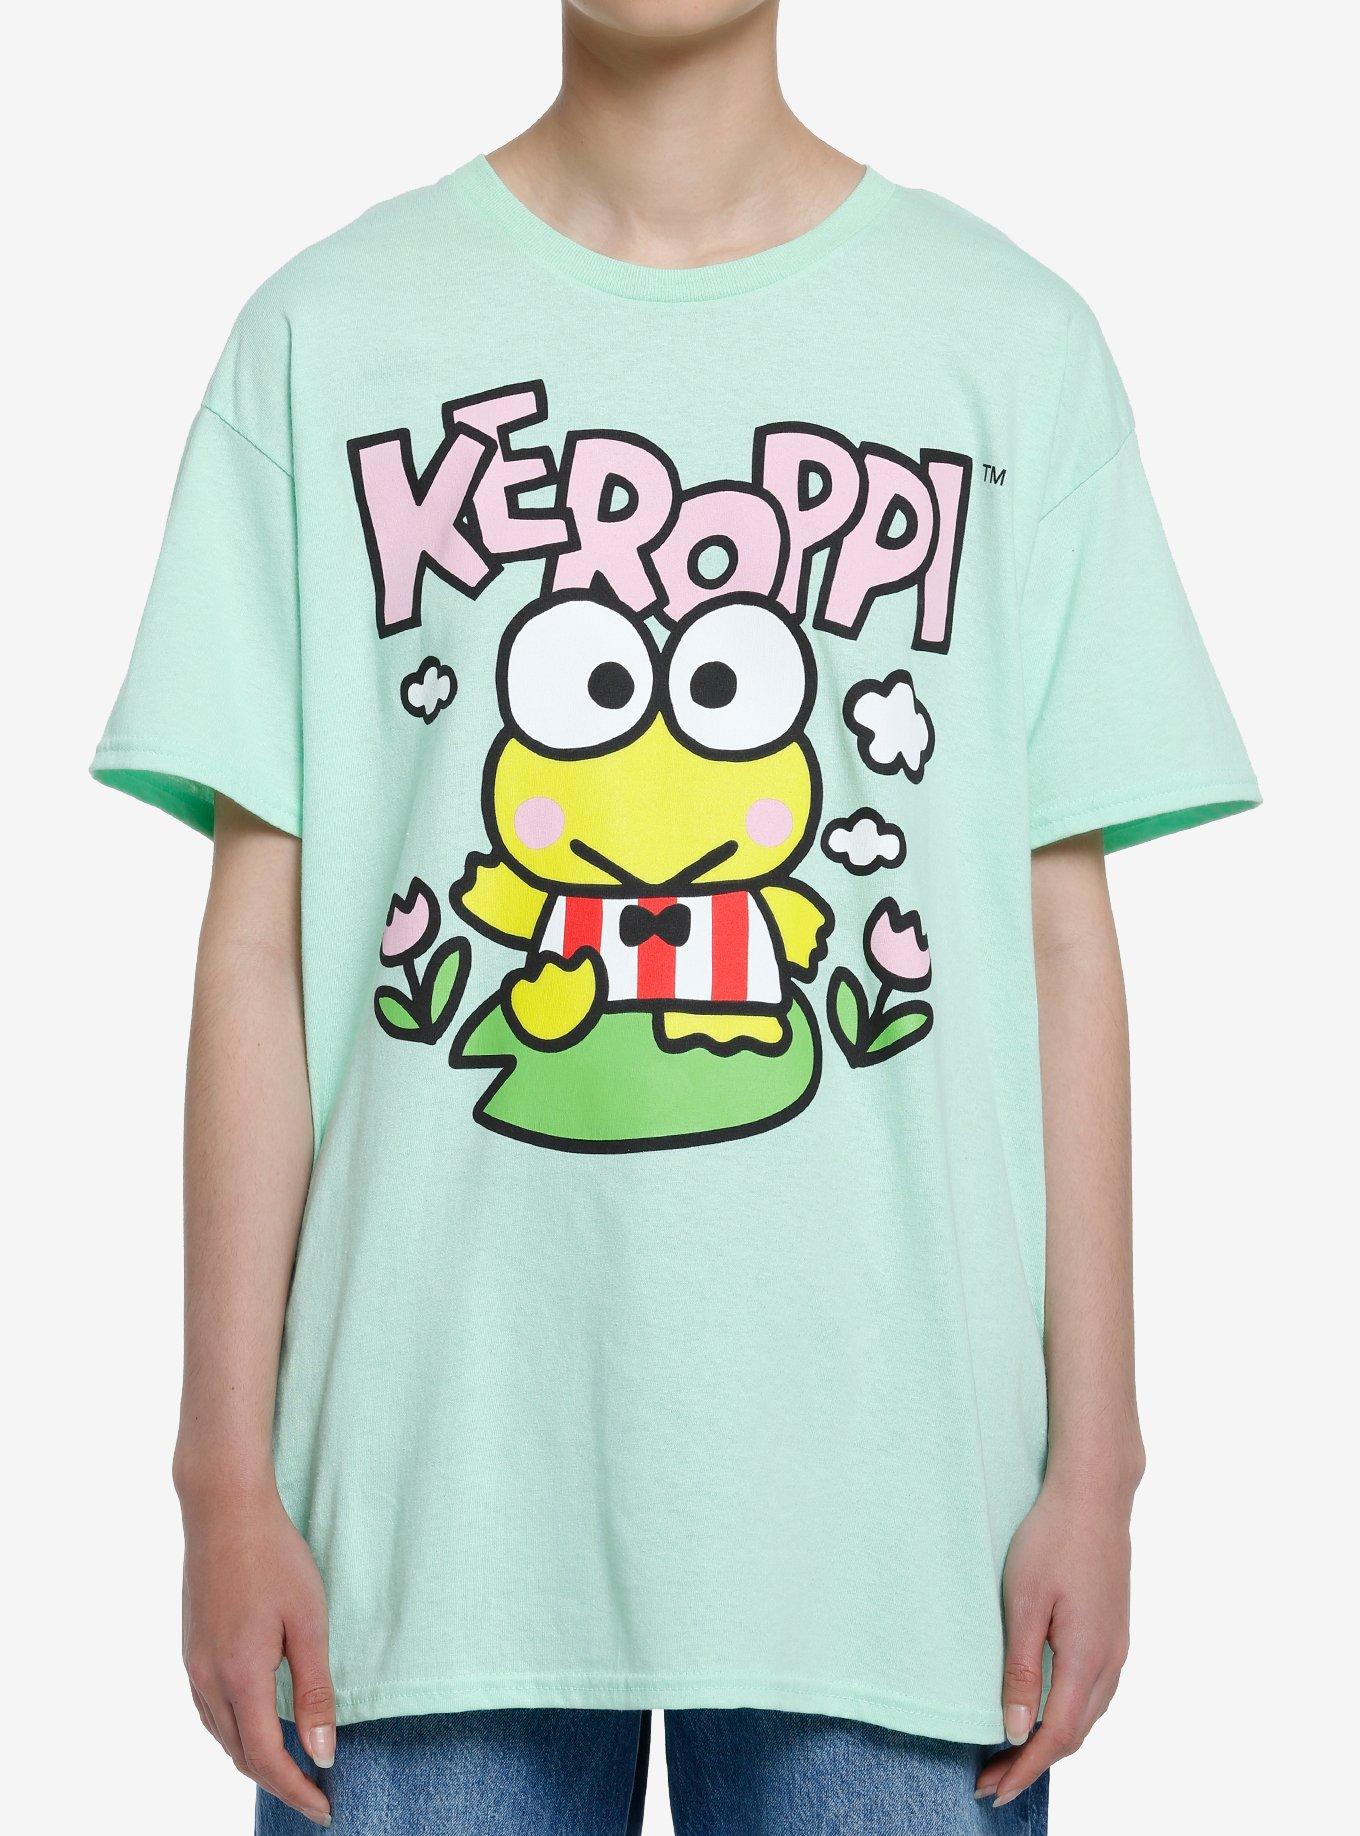 Keroppi Double-Sided Girls T-Shirt